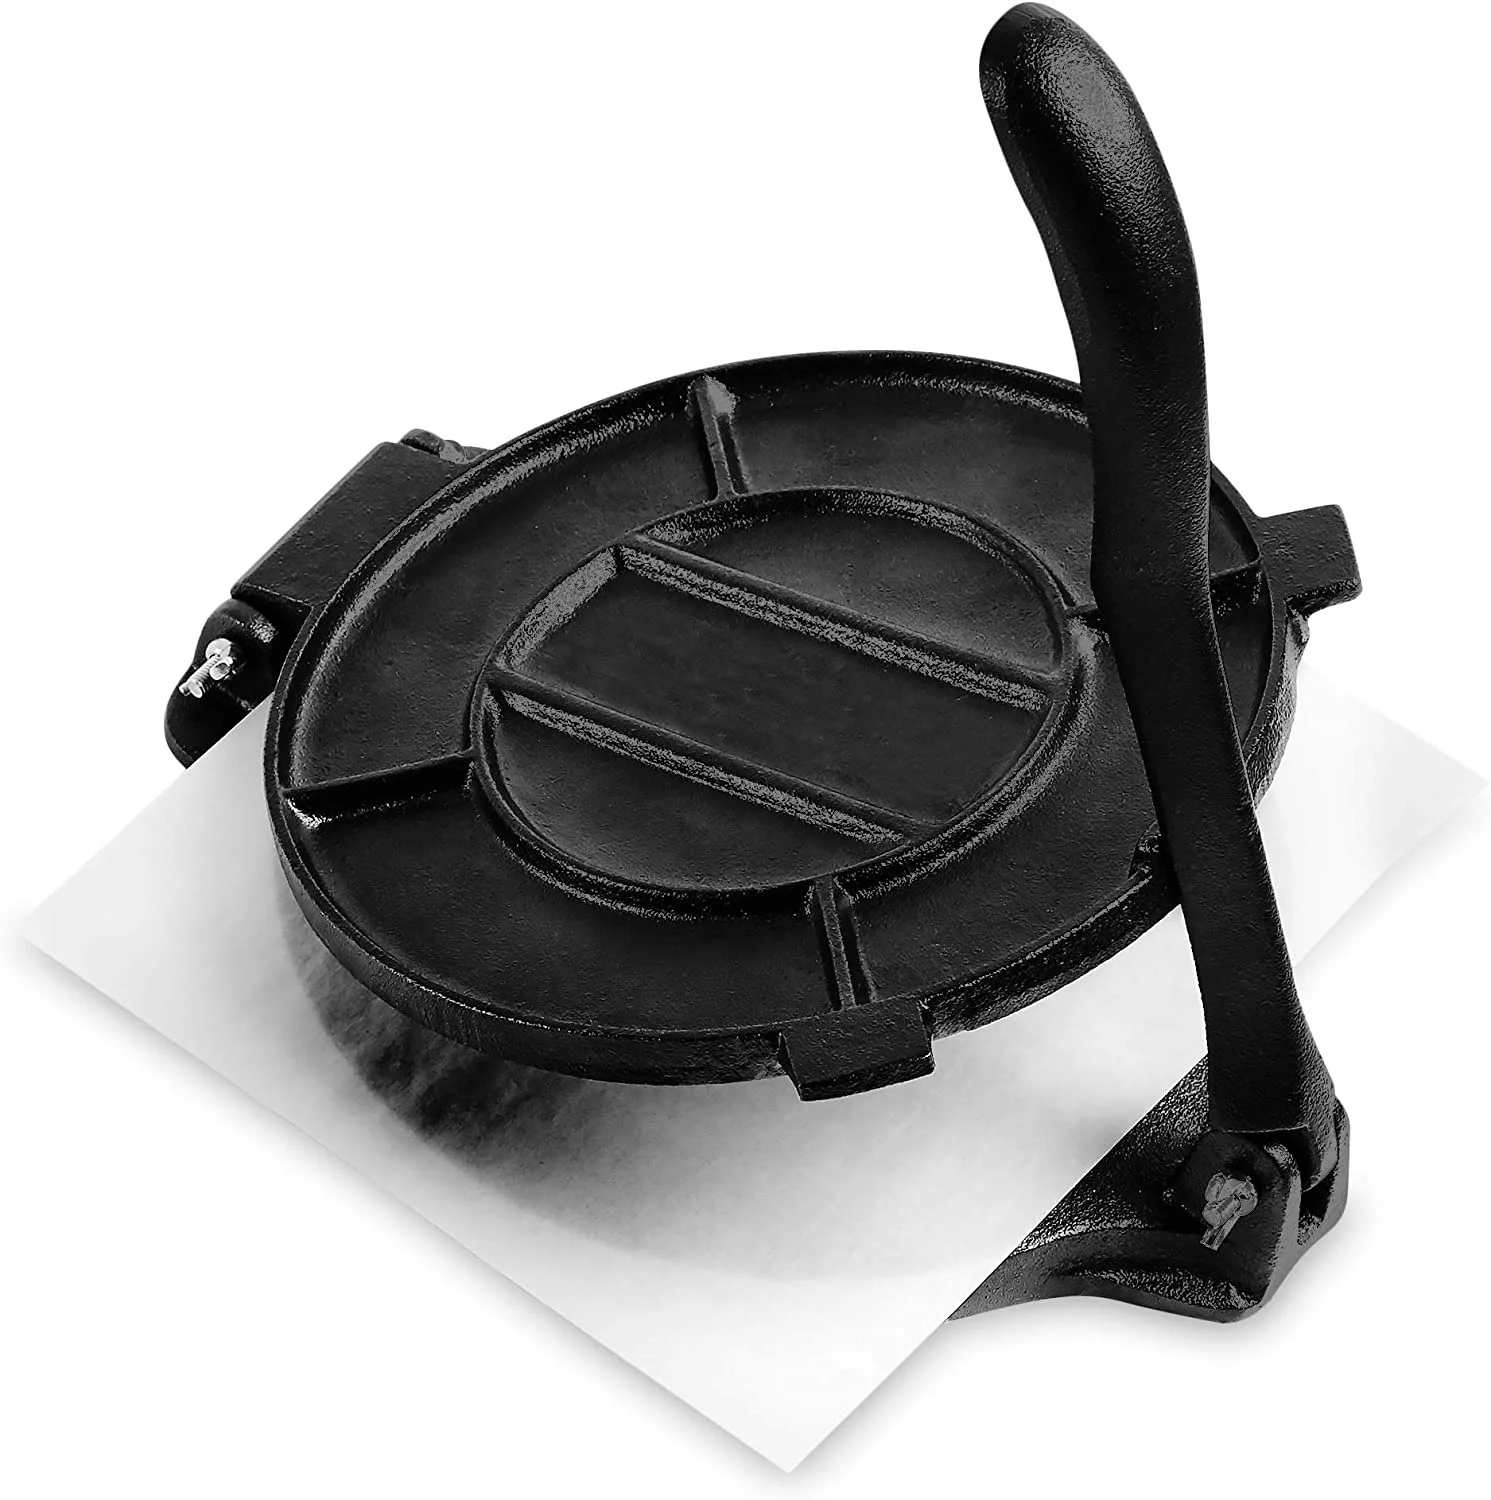 Антипригарный подогреватель, набор для приготовления блюд, пресс для бургеров, чугунный пресс для тортильи (1600236122349)